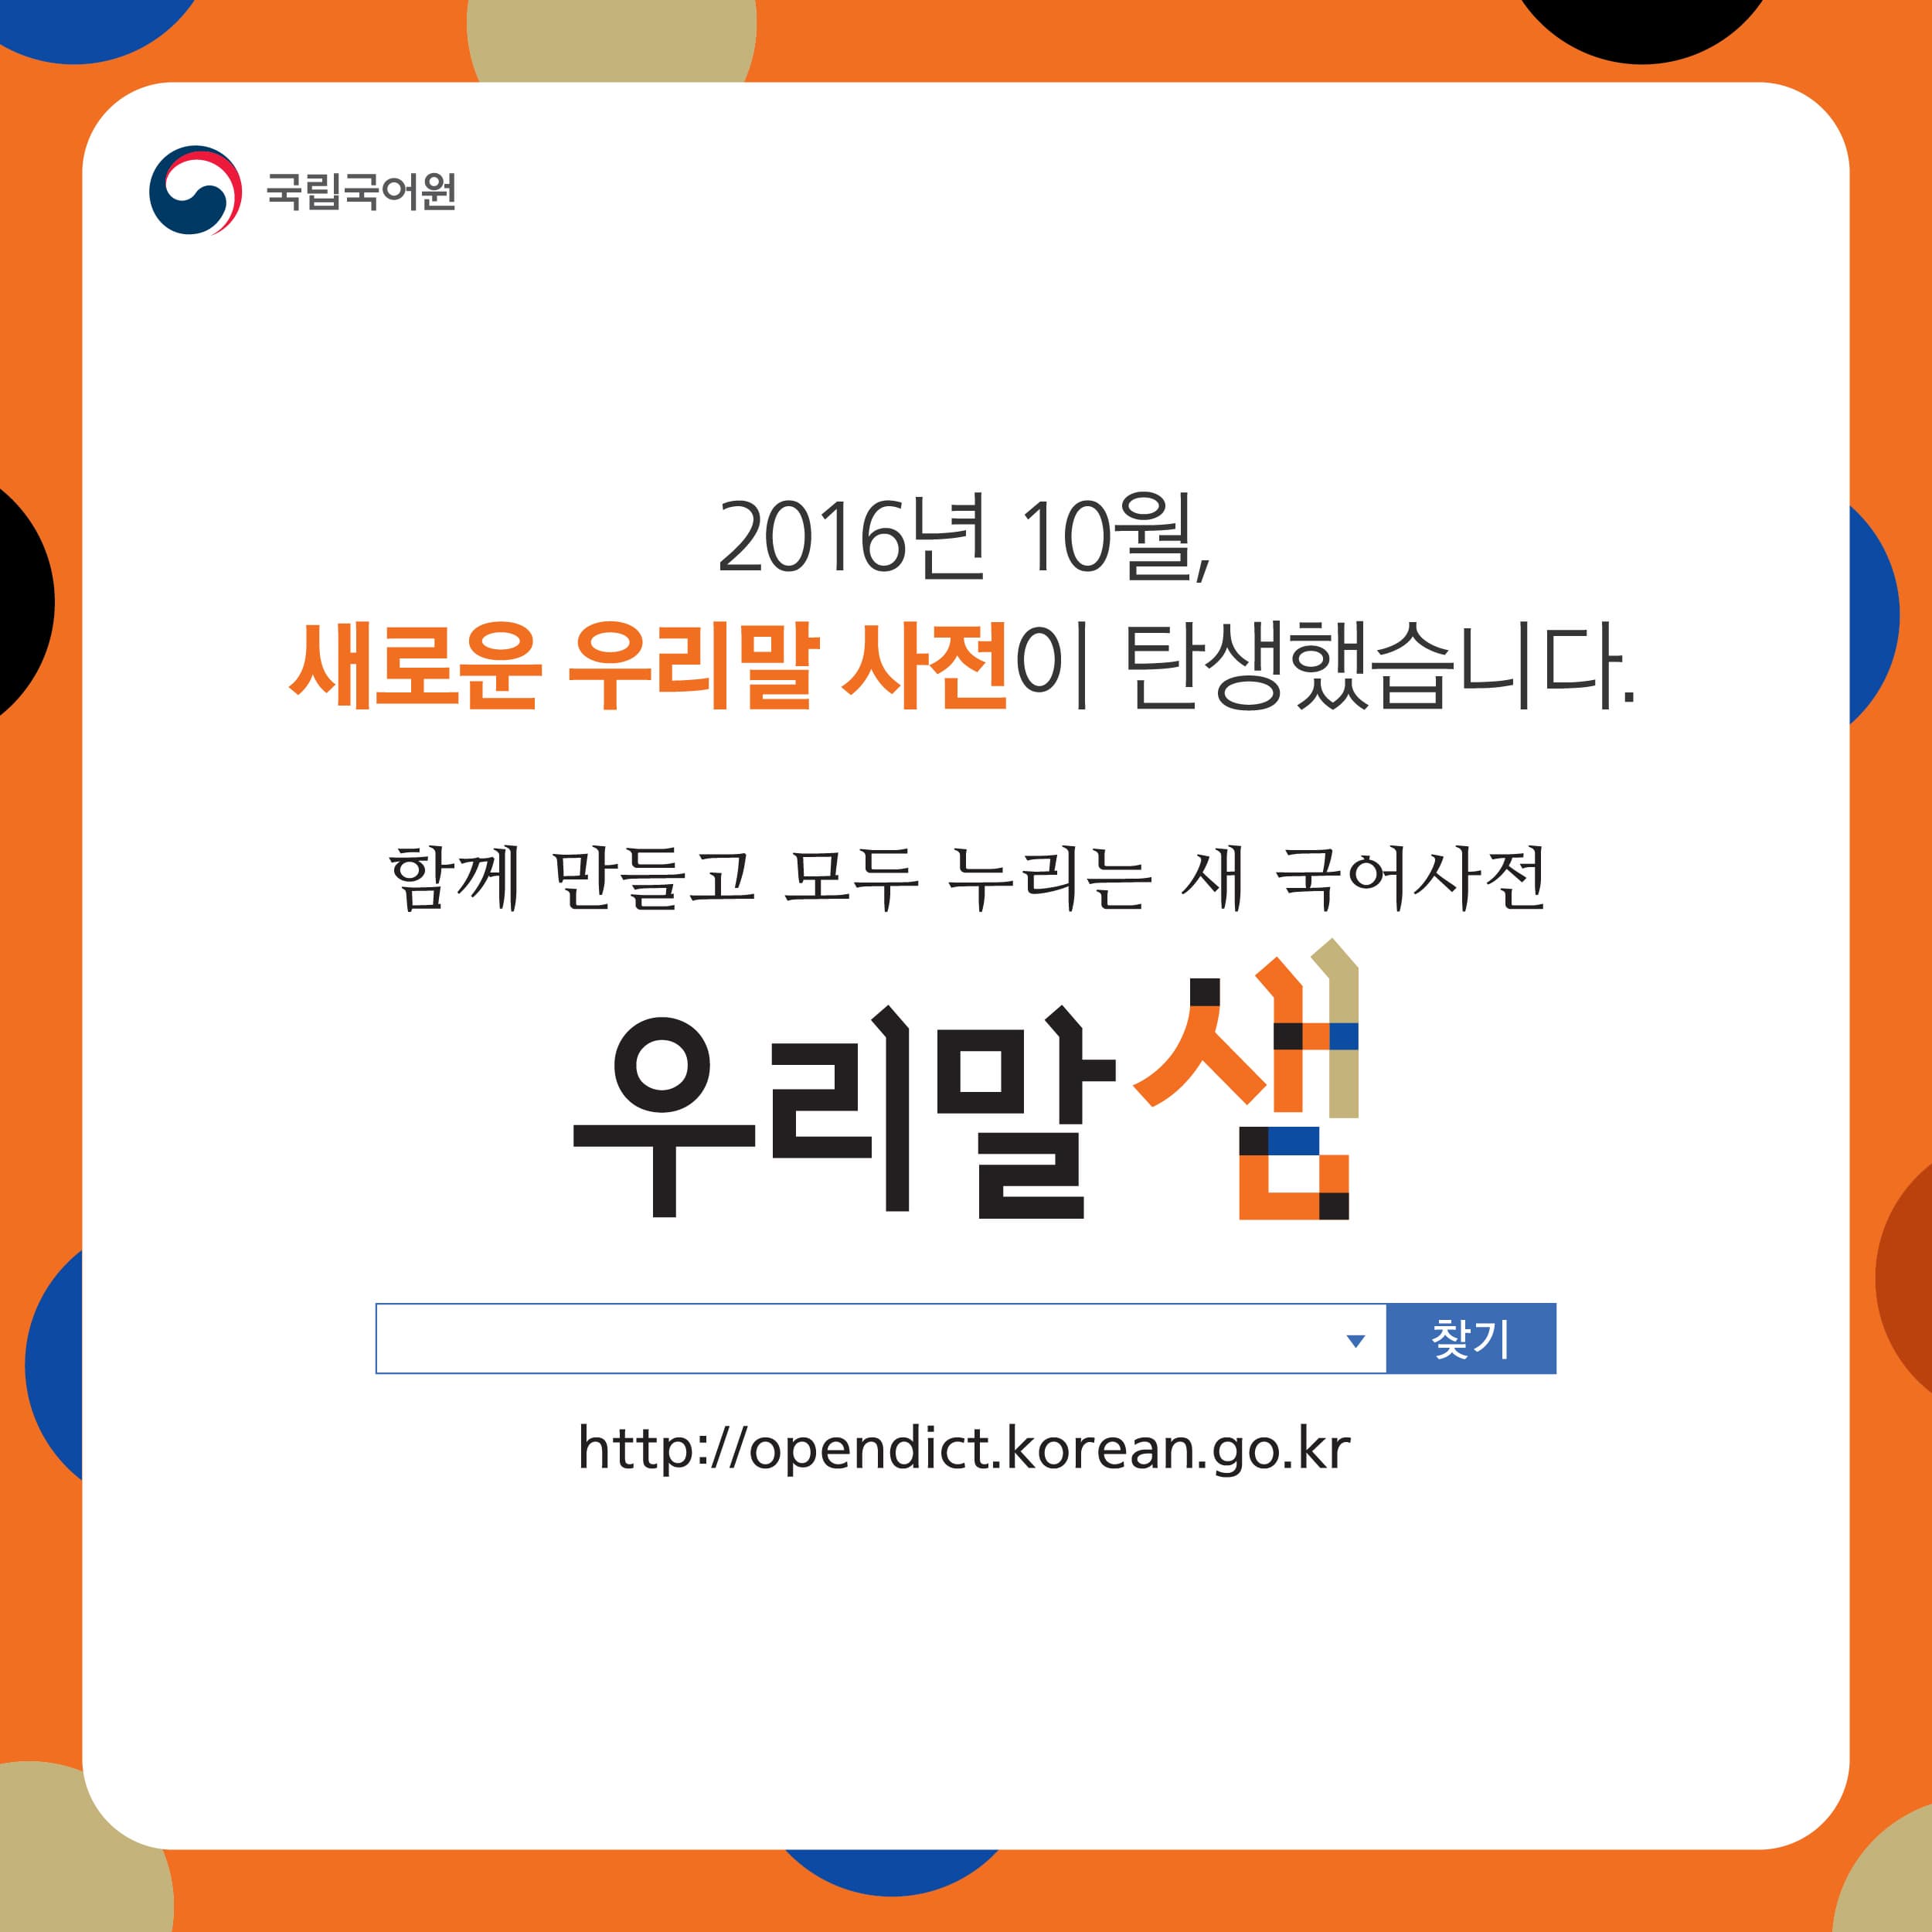 2016년 10월, 새로운 우리말 사전이 탄생했습니다.
함께 만들고 모두 누리는 새 국어사전. 우리말샘
http://opendict.korean.go.kr
